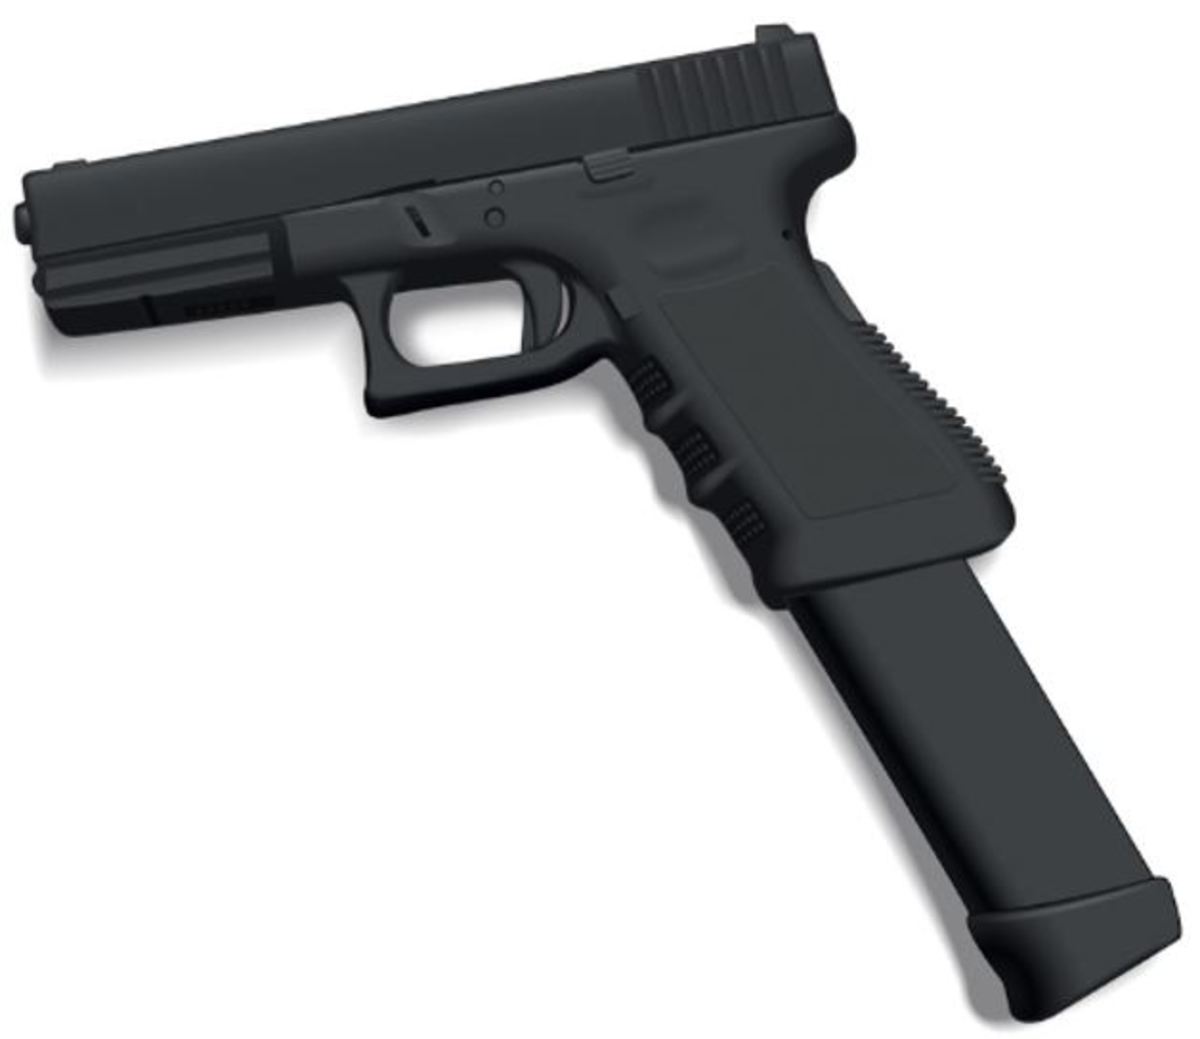 six-gun-laws-that-reduce-crime